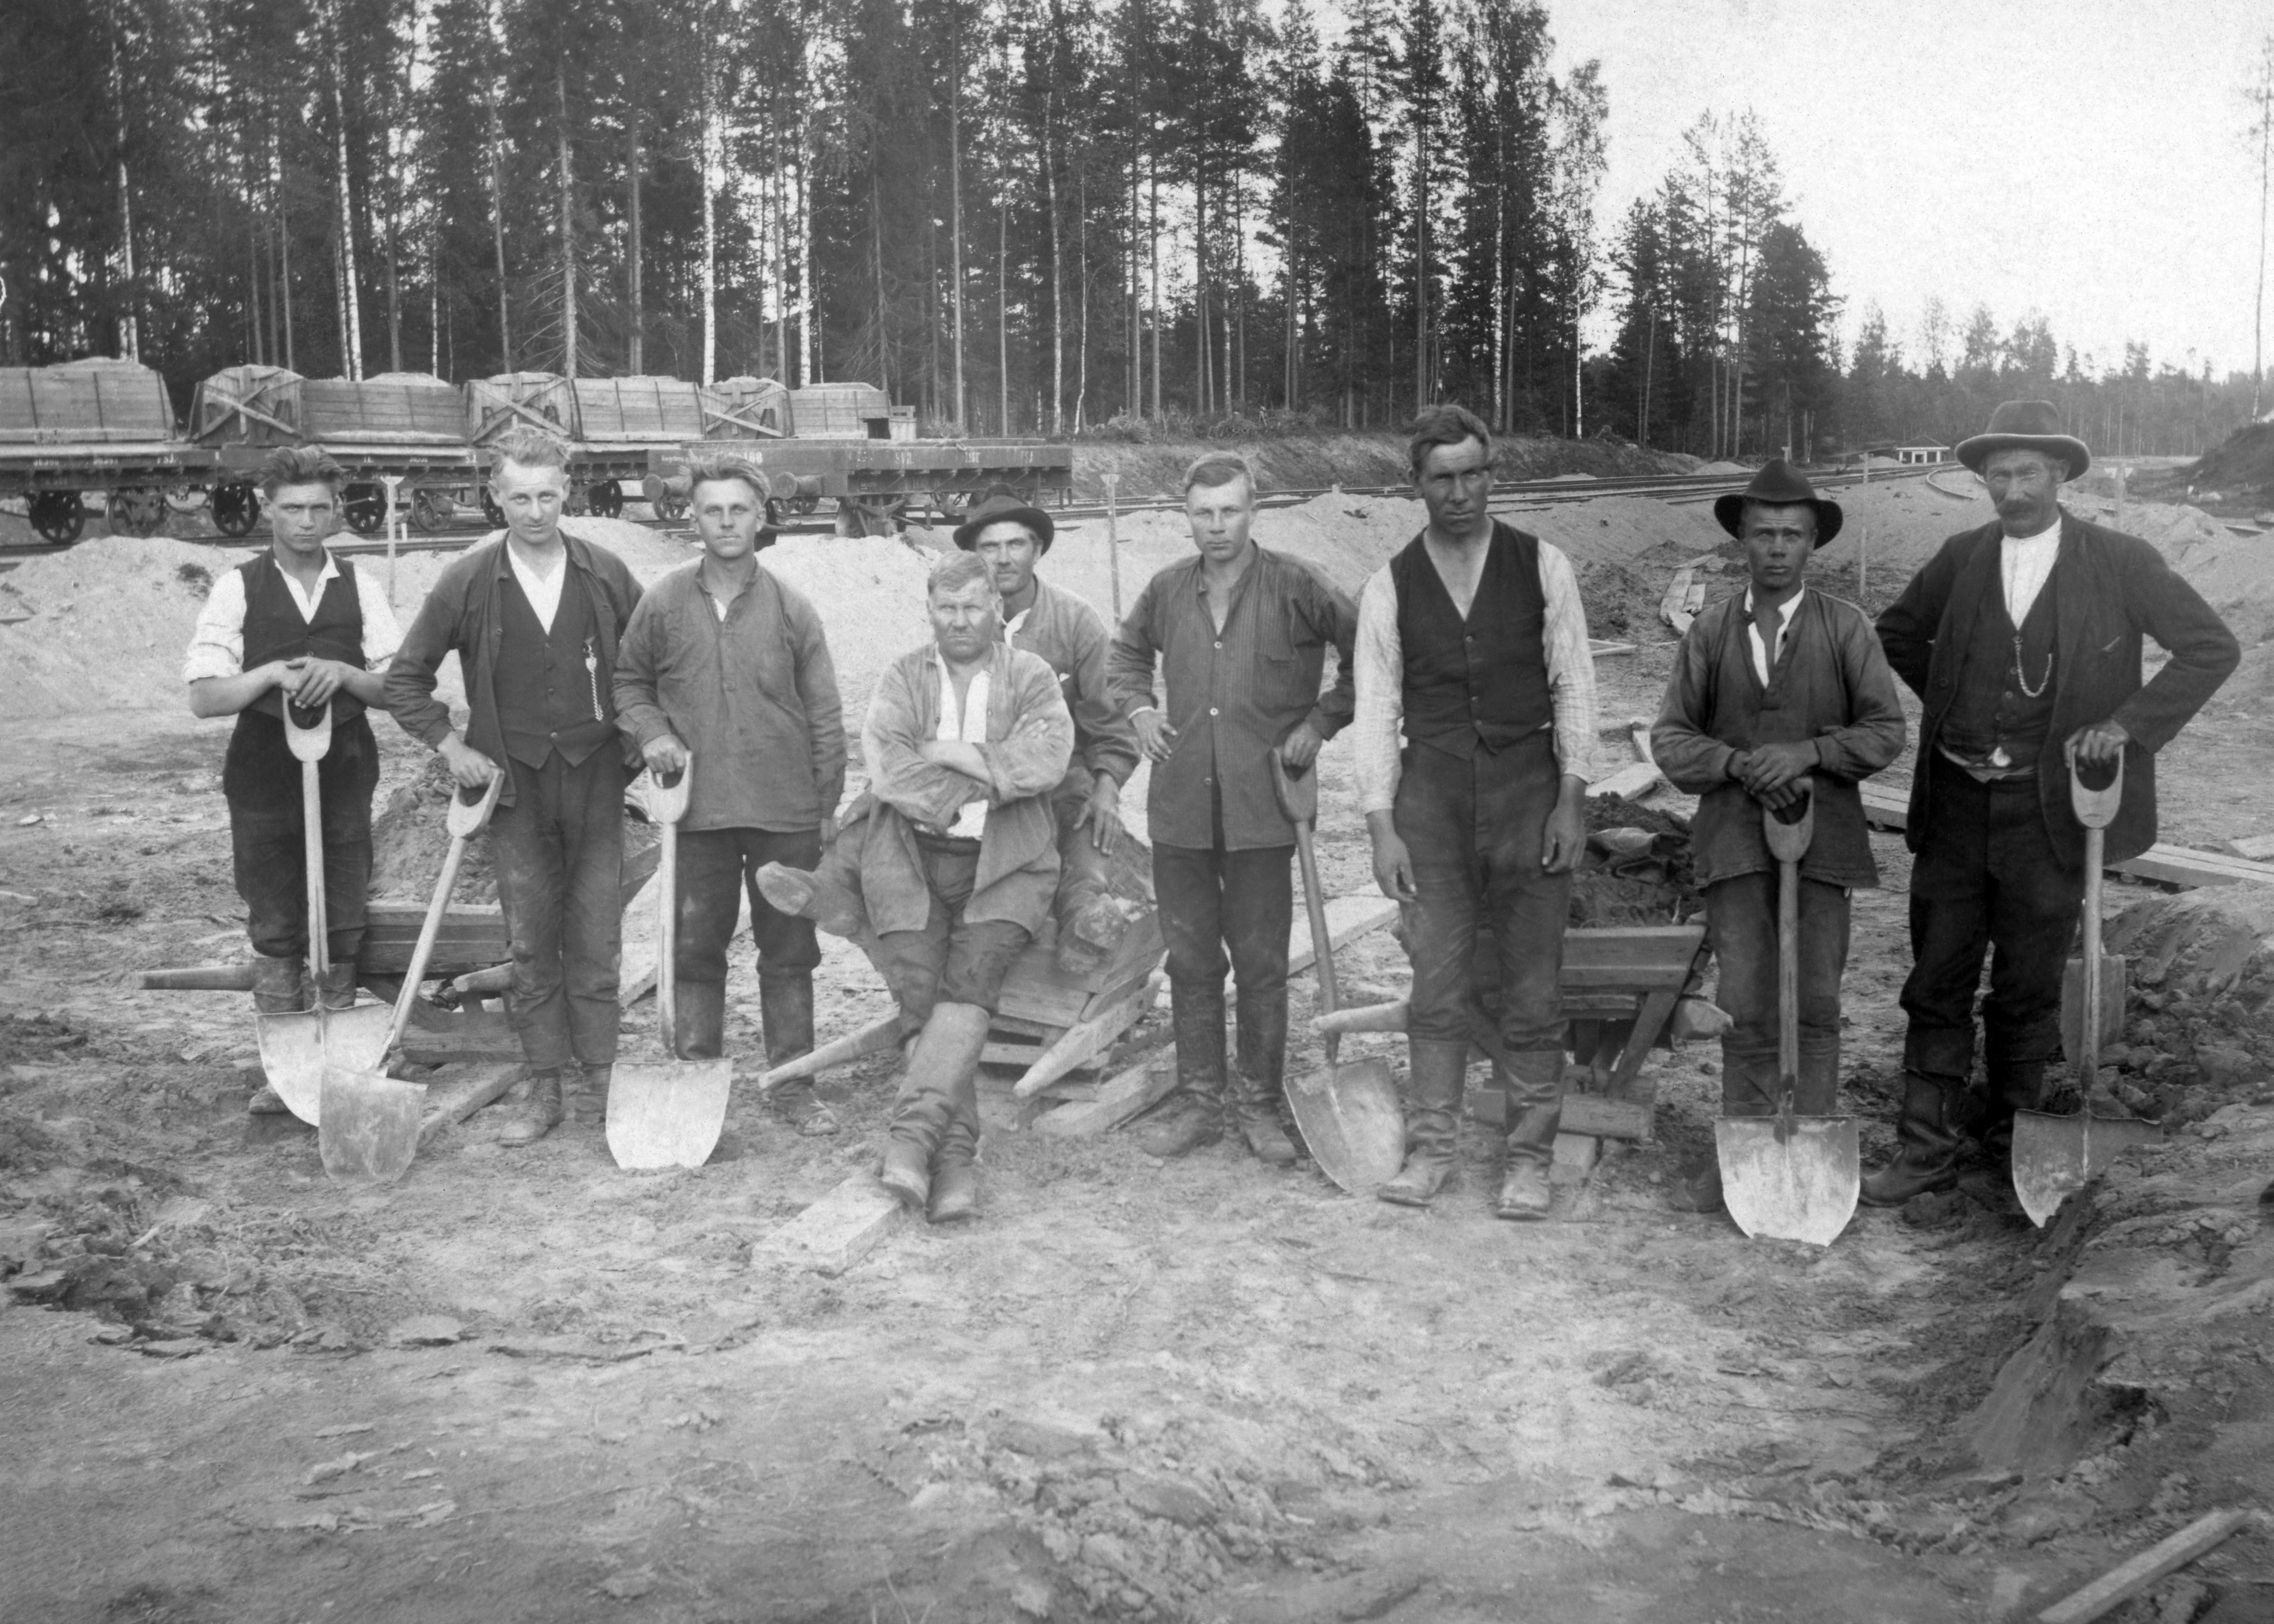 Radanrakentajia lapioiden kanssa ryhmäkuvassa Valkjärven radalla.